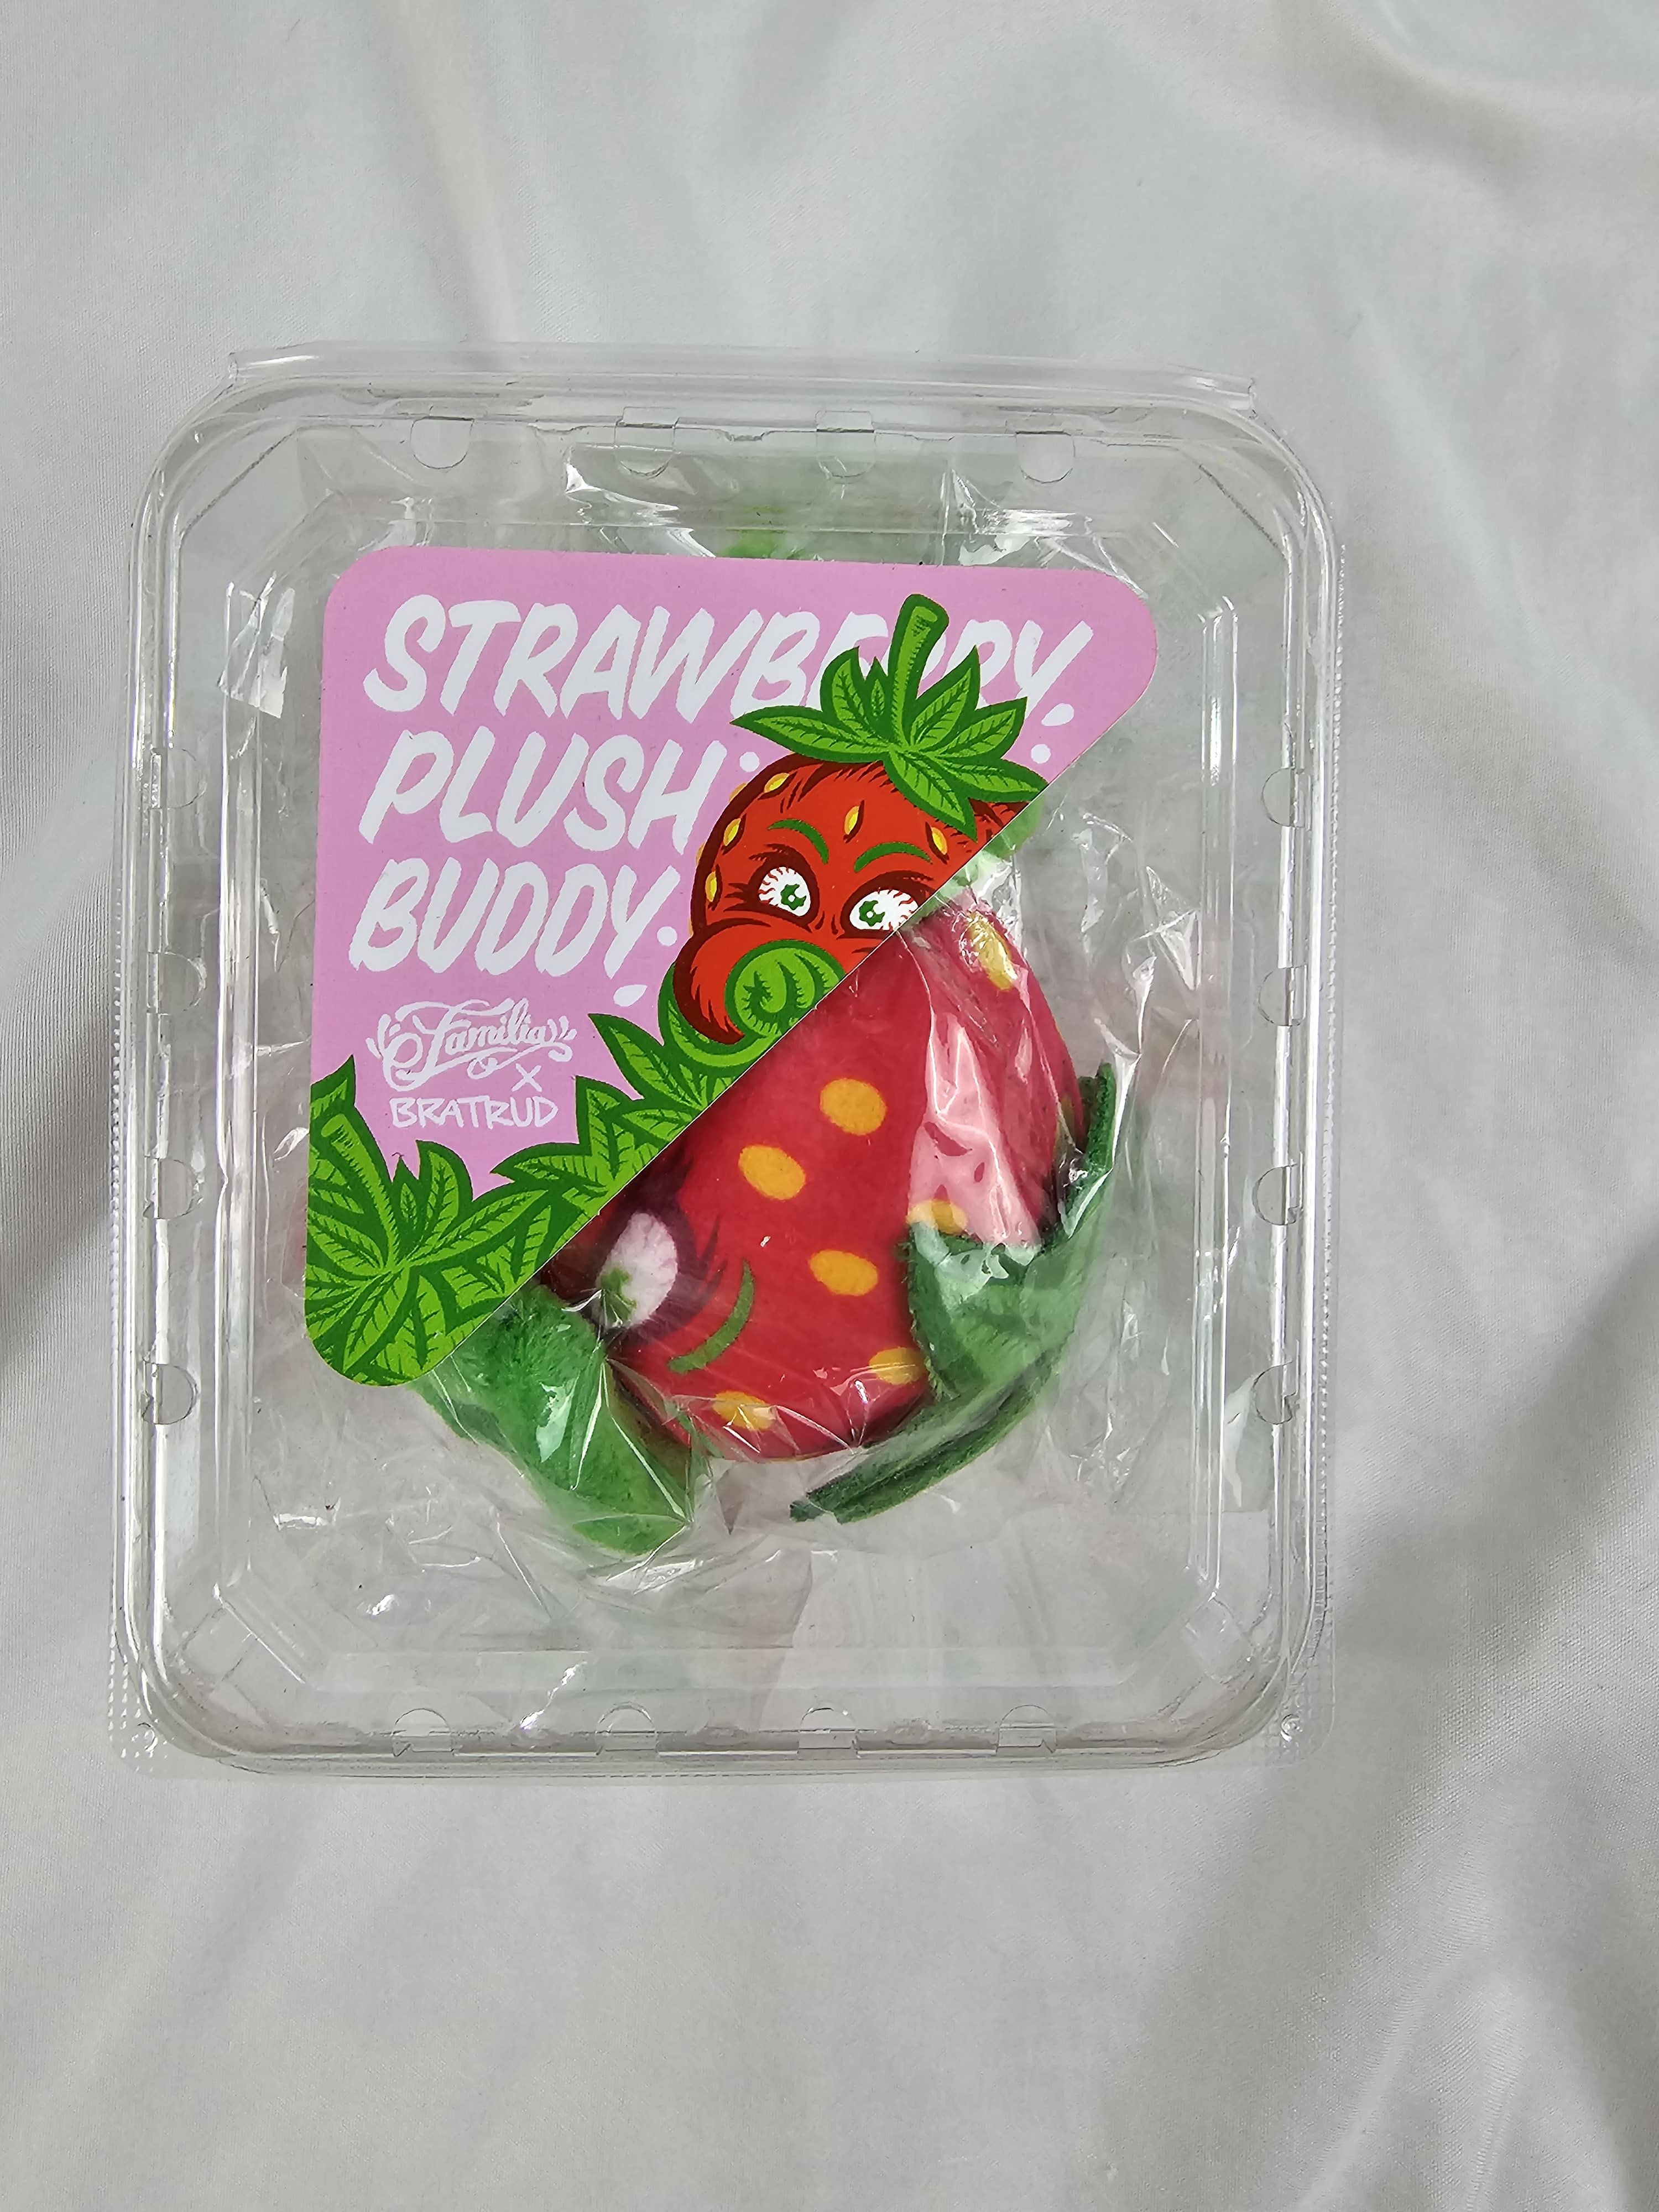 Familia x Todd Bratrud Strawberry Cough Plush - US